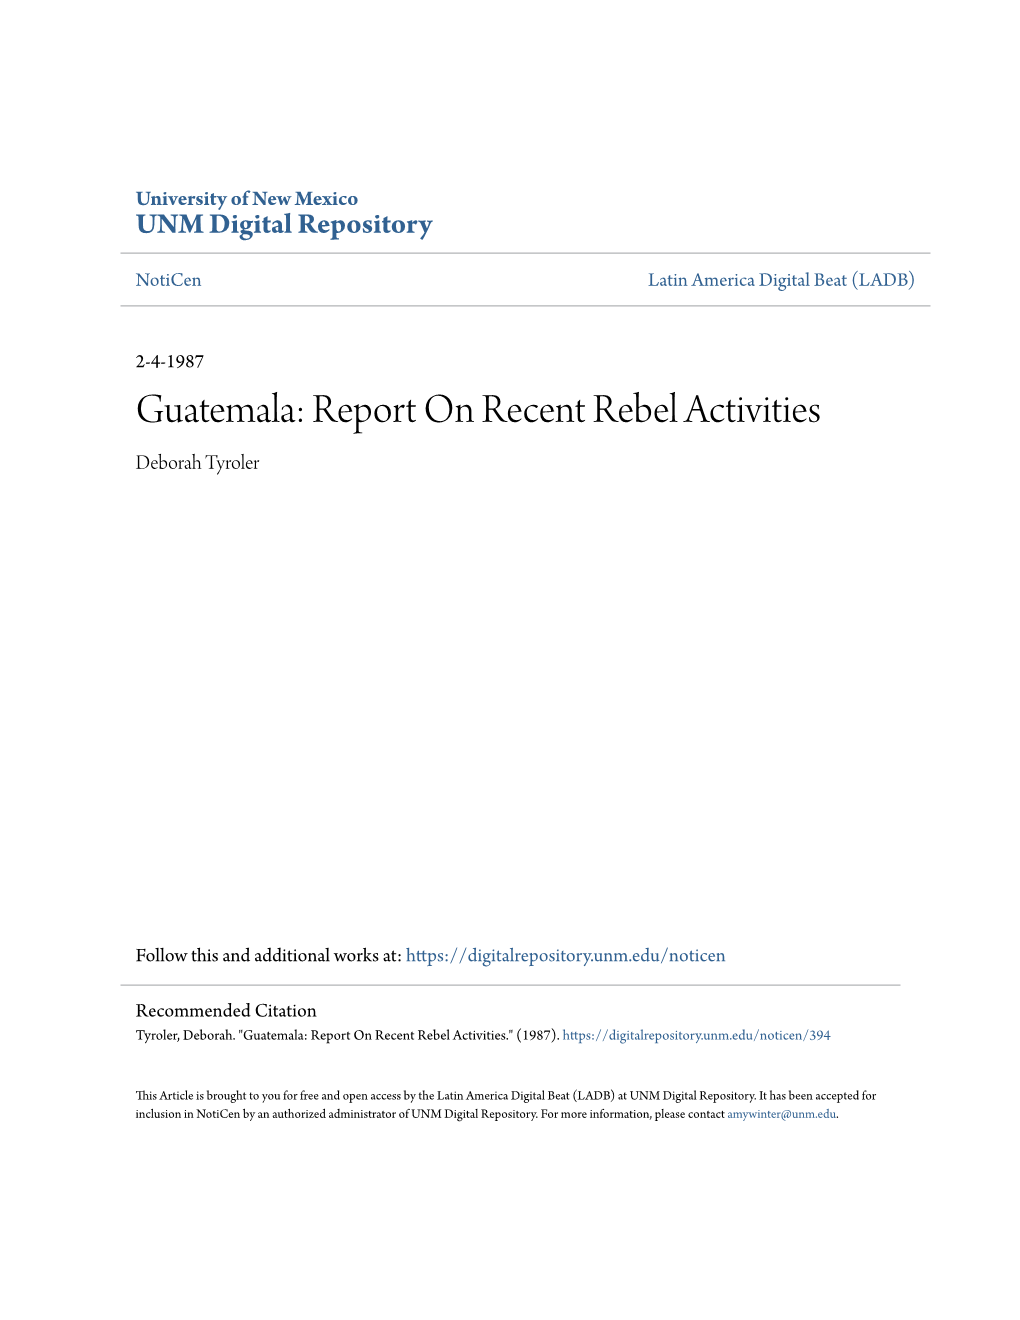 Guatemala: Report on Recent Rebel Activities Deborah Tyroler